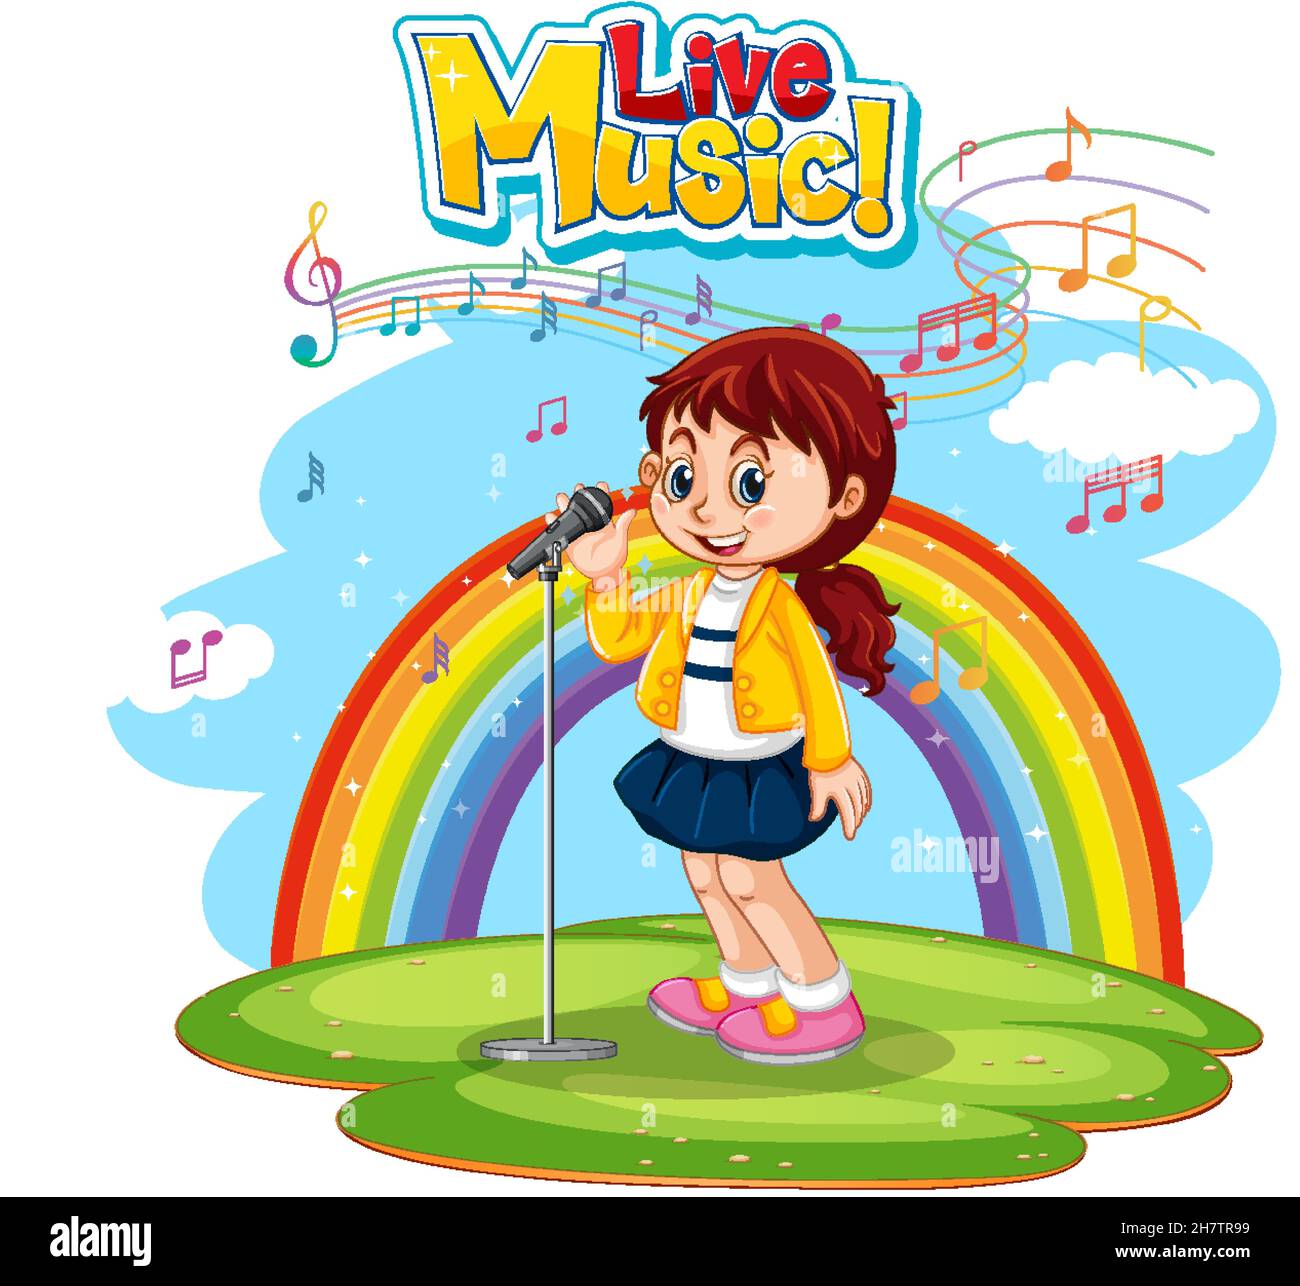 Live-Musik-Logo mit einem Mädchen singen auf Regenbogen Hintergrund Illustration Stock Vektor